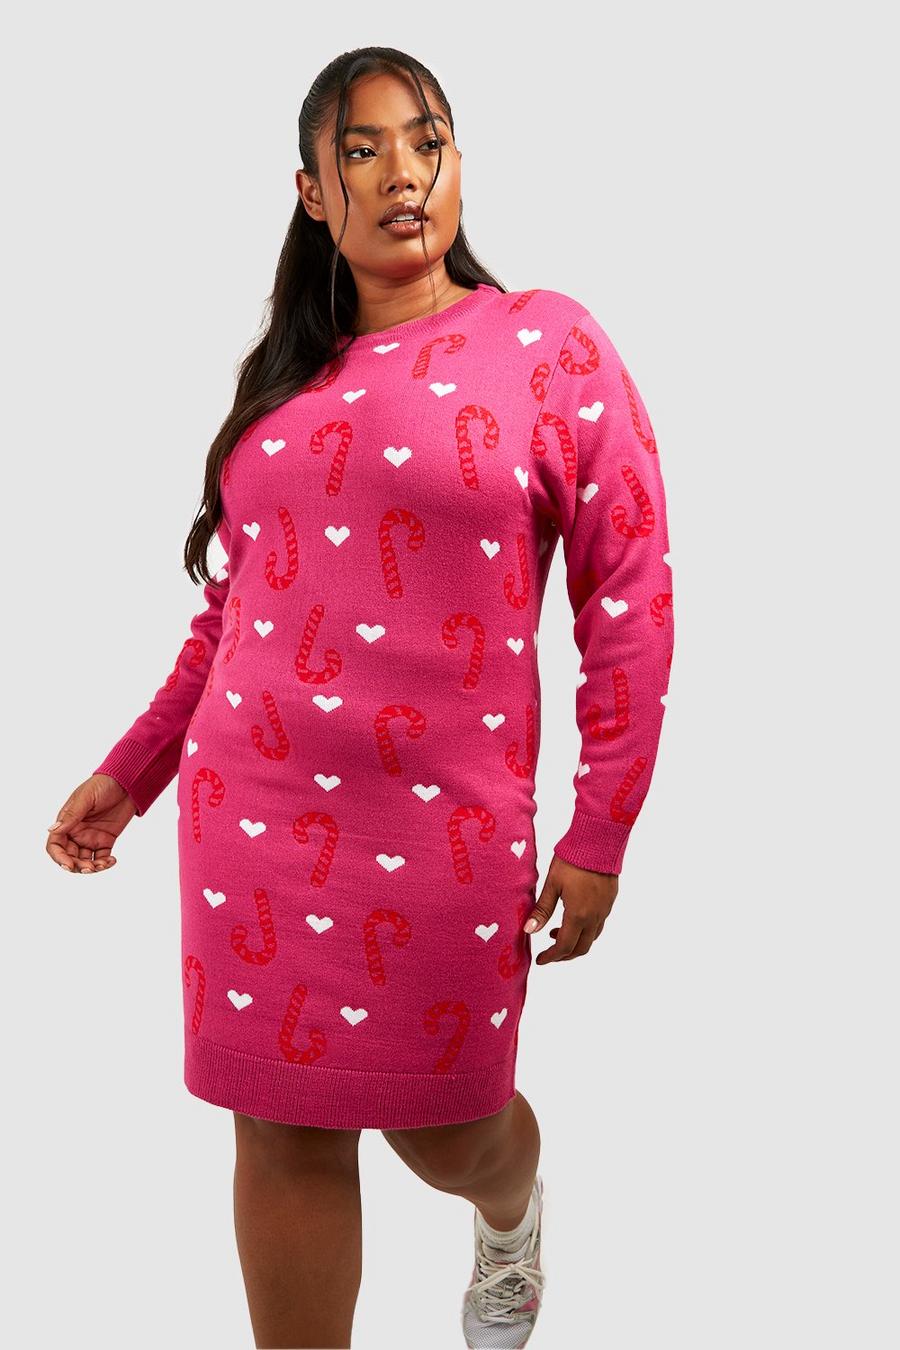 Plus Weihnachts-Pulloverkleid mit Candy Cane Print, Hot pink